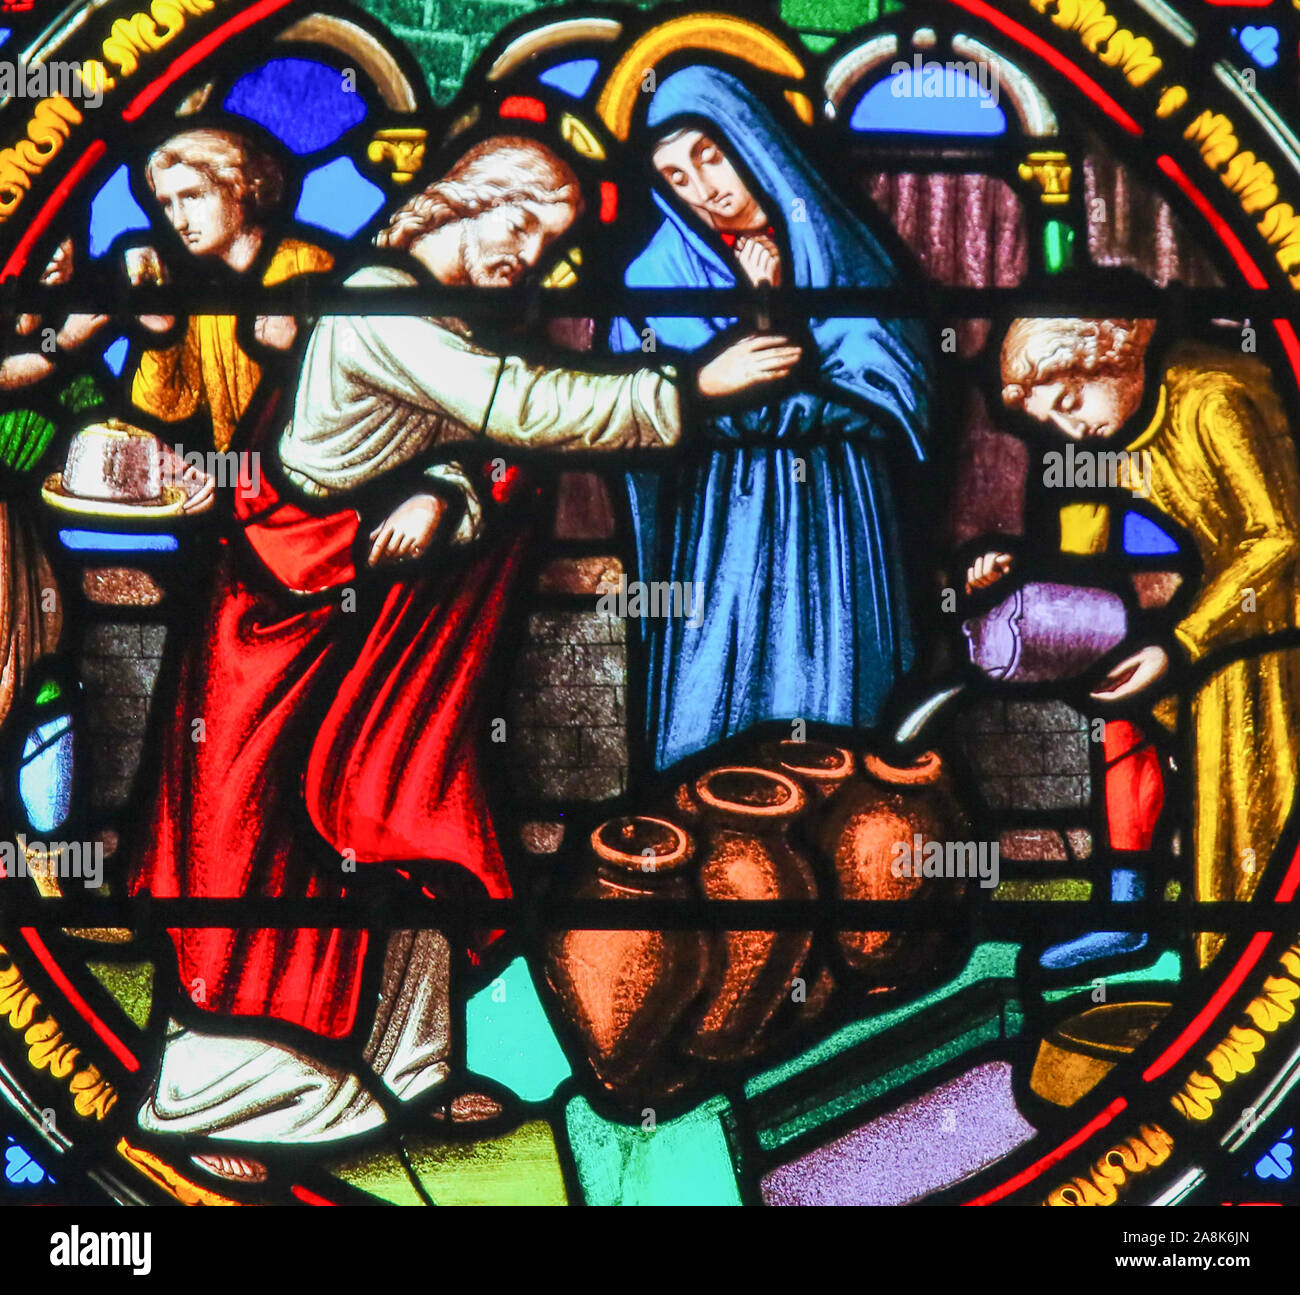 Glasmalereien in der Kapelle Notre-Dame-des-flots (1857) in Sainte Adresse, Le Havre, Frankreich, Darstellung von Jesus verwandelt Wasser in Wein auf der Ma Stockfoto